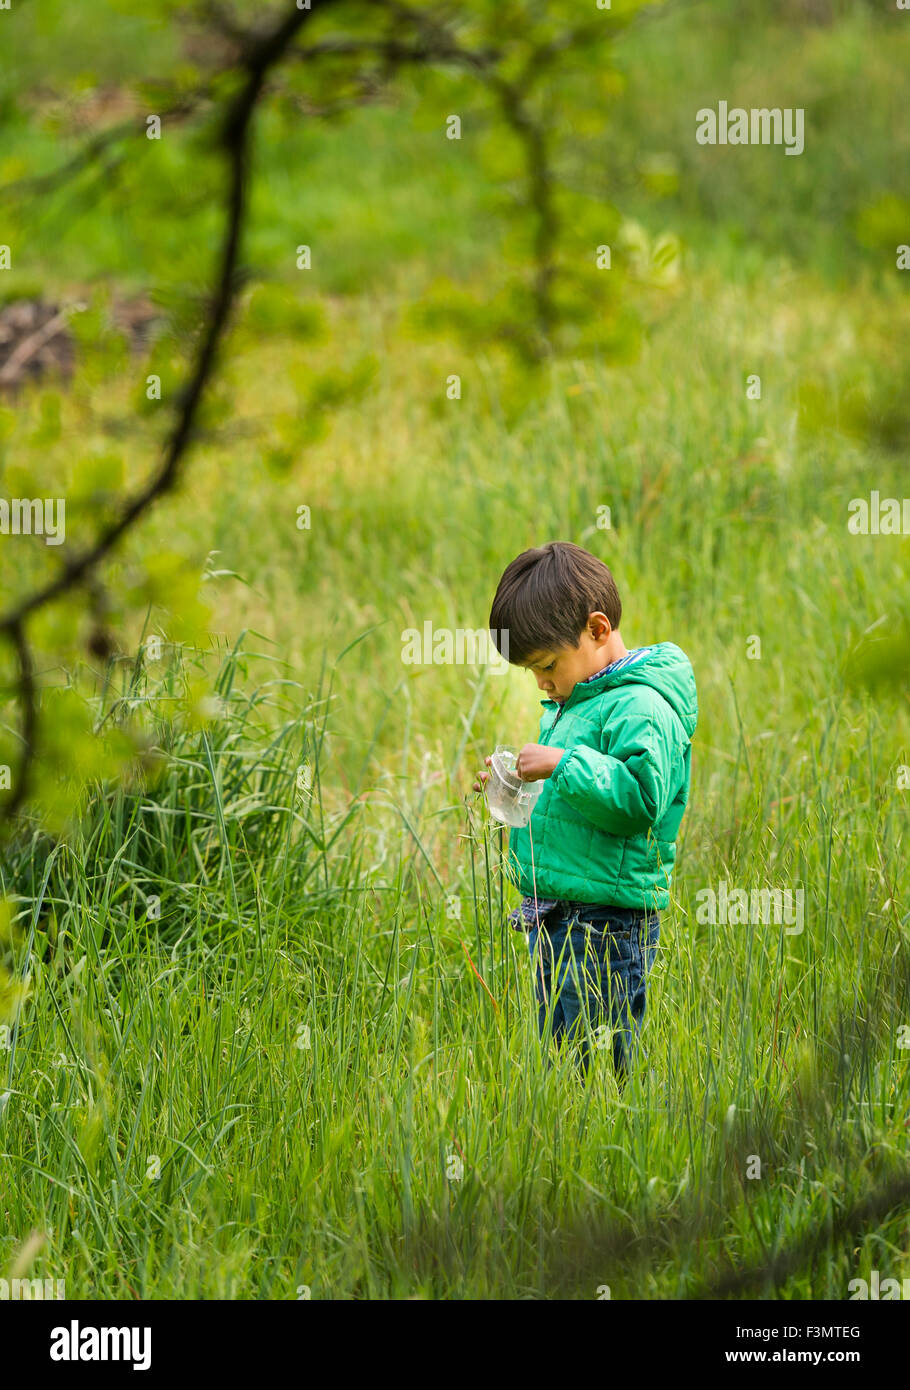 Young Asian boy recueille des insectes dans l'herbe haute Banque D'Images